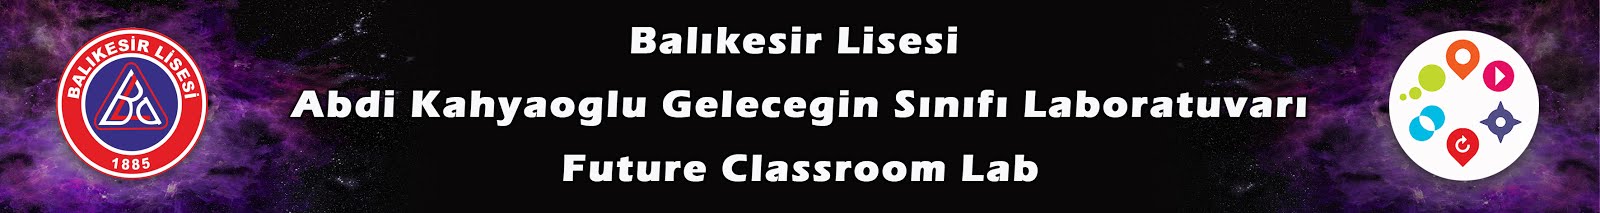 Balıkesir Lisesi Abdi Kahyaoğlu Future Classroom Laboratuarı